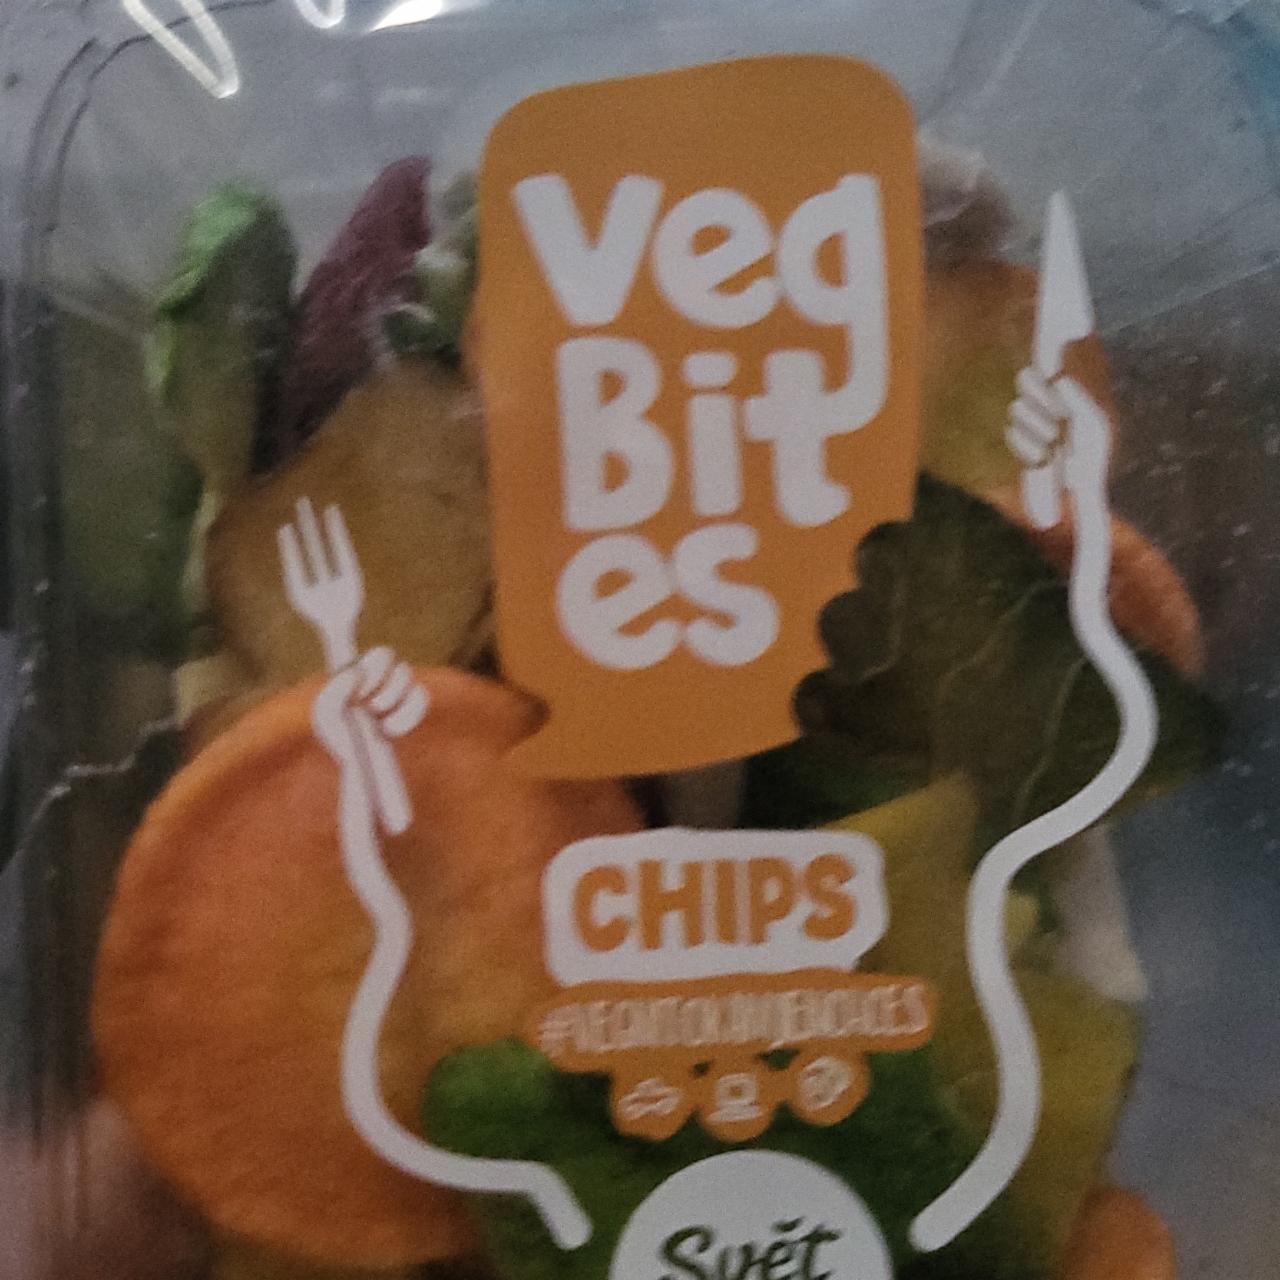 Fotografie - vegbites chips